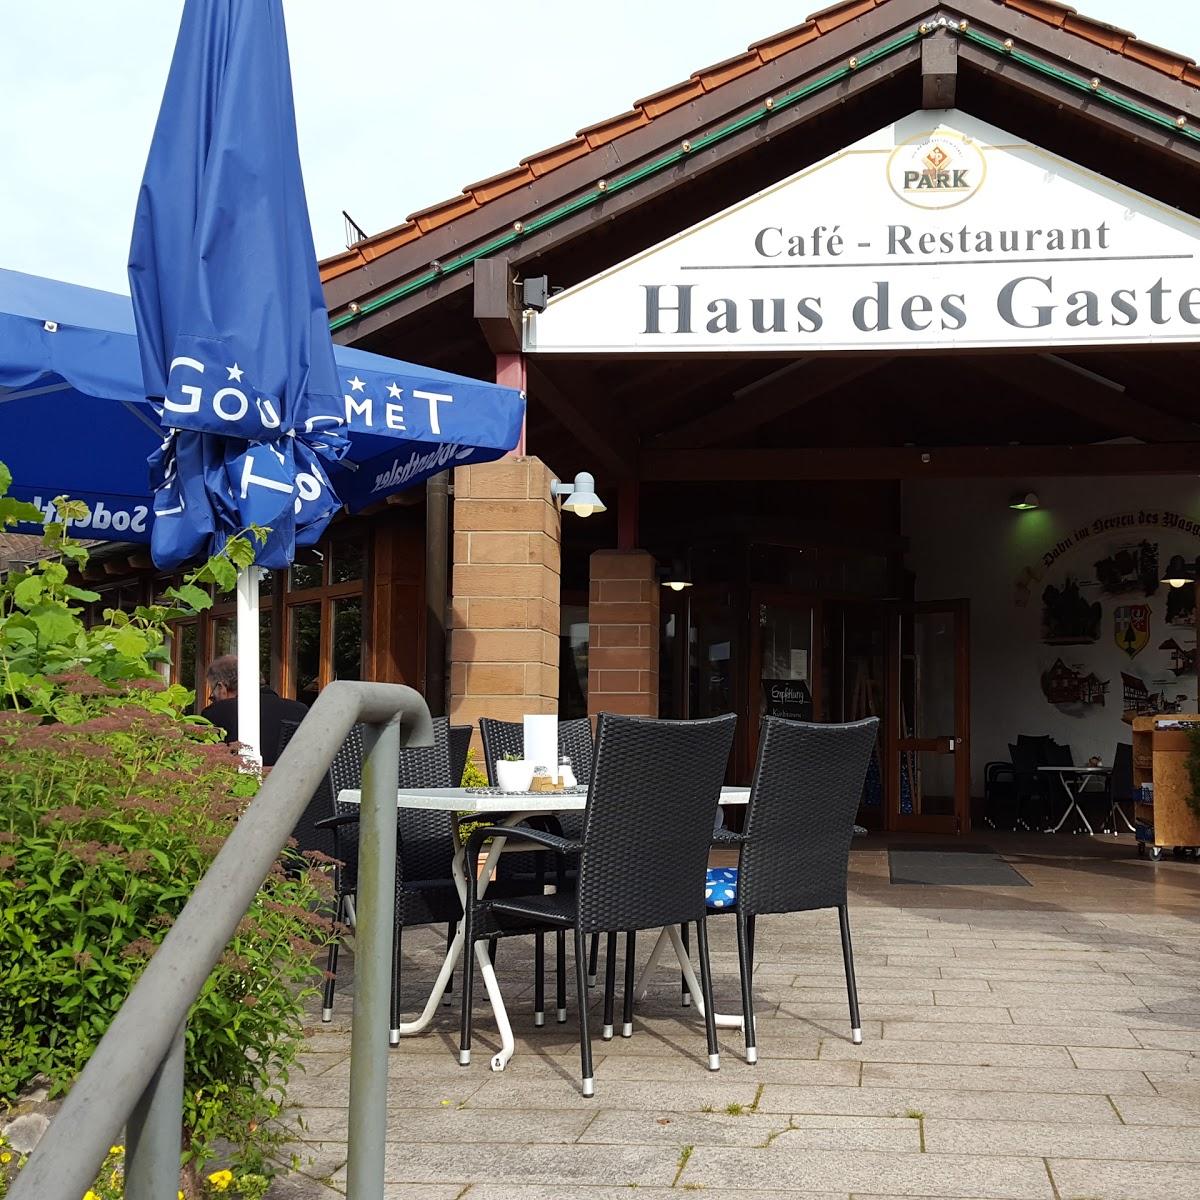 Restaurant "Haus des Gastes - Christofer Behres" in Dahn